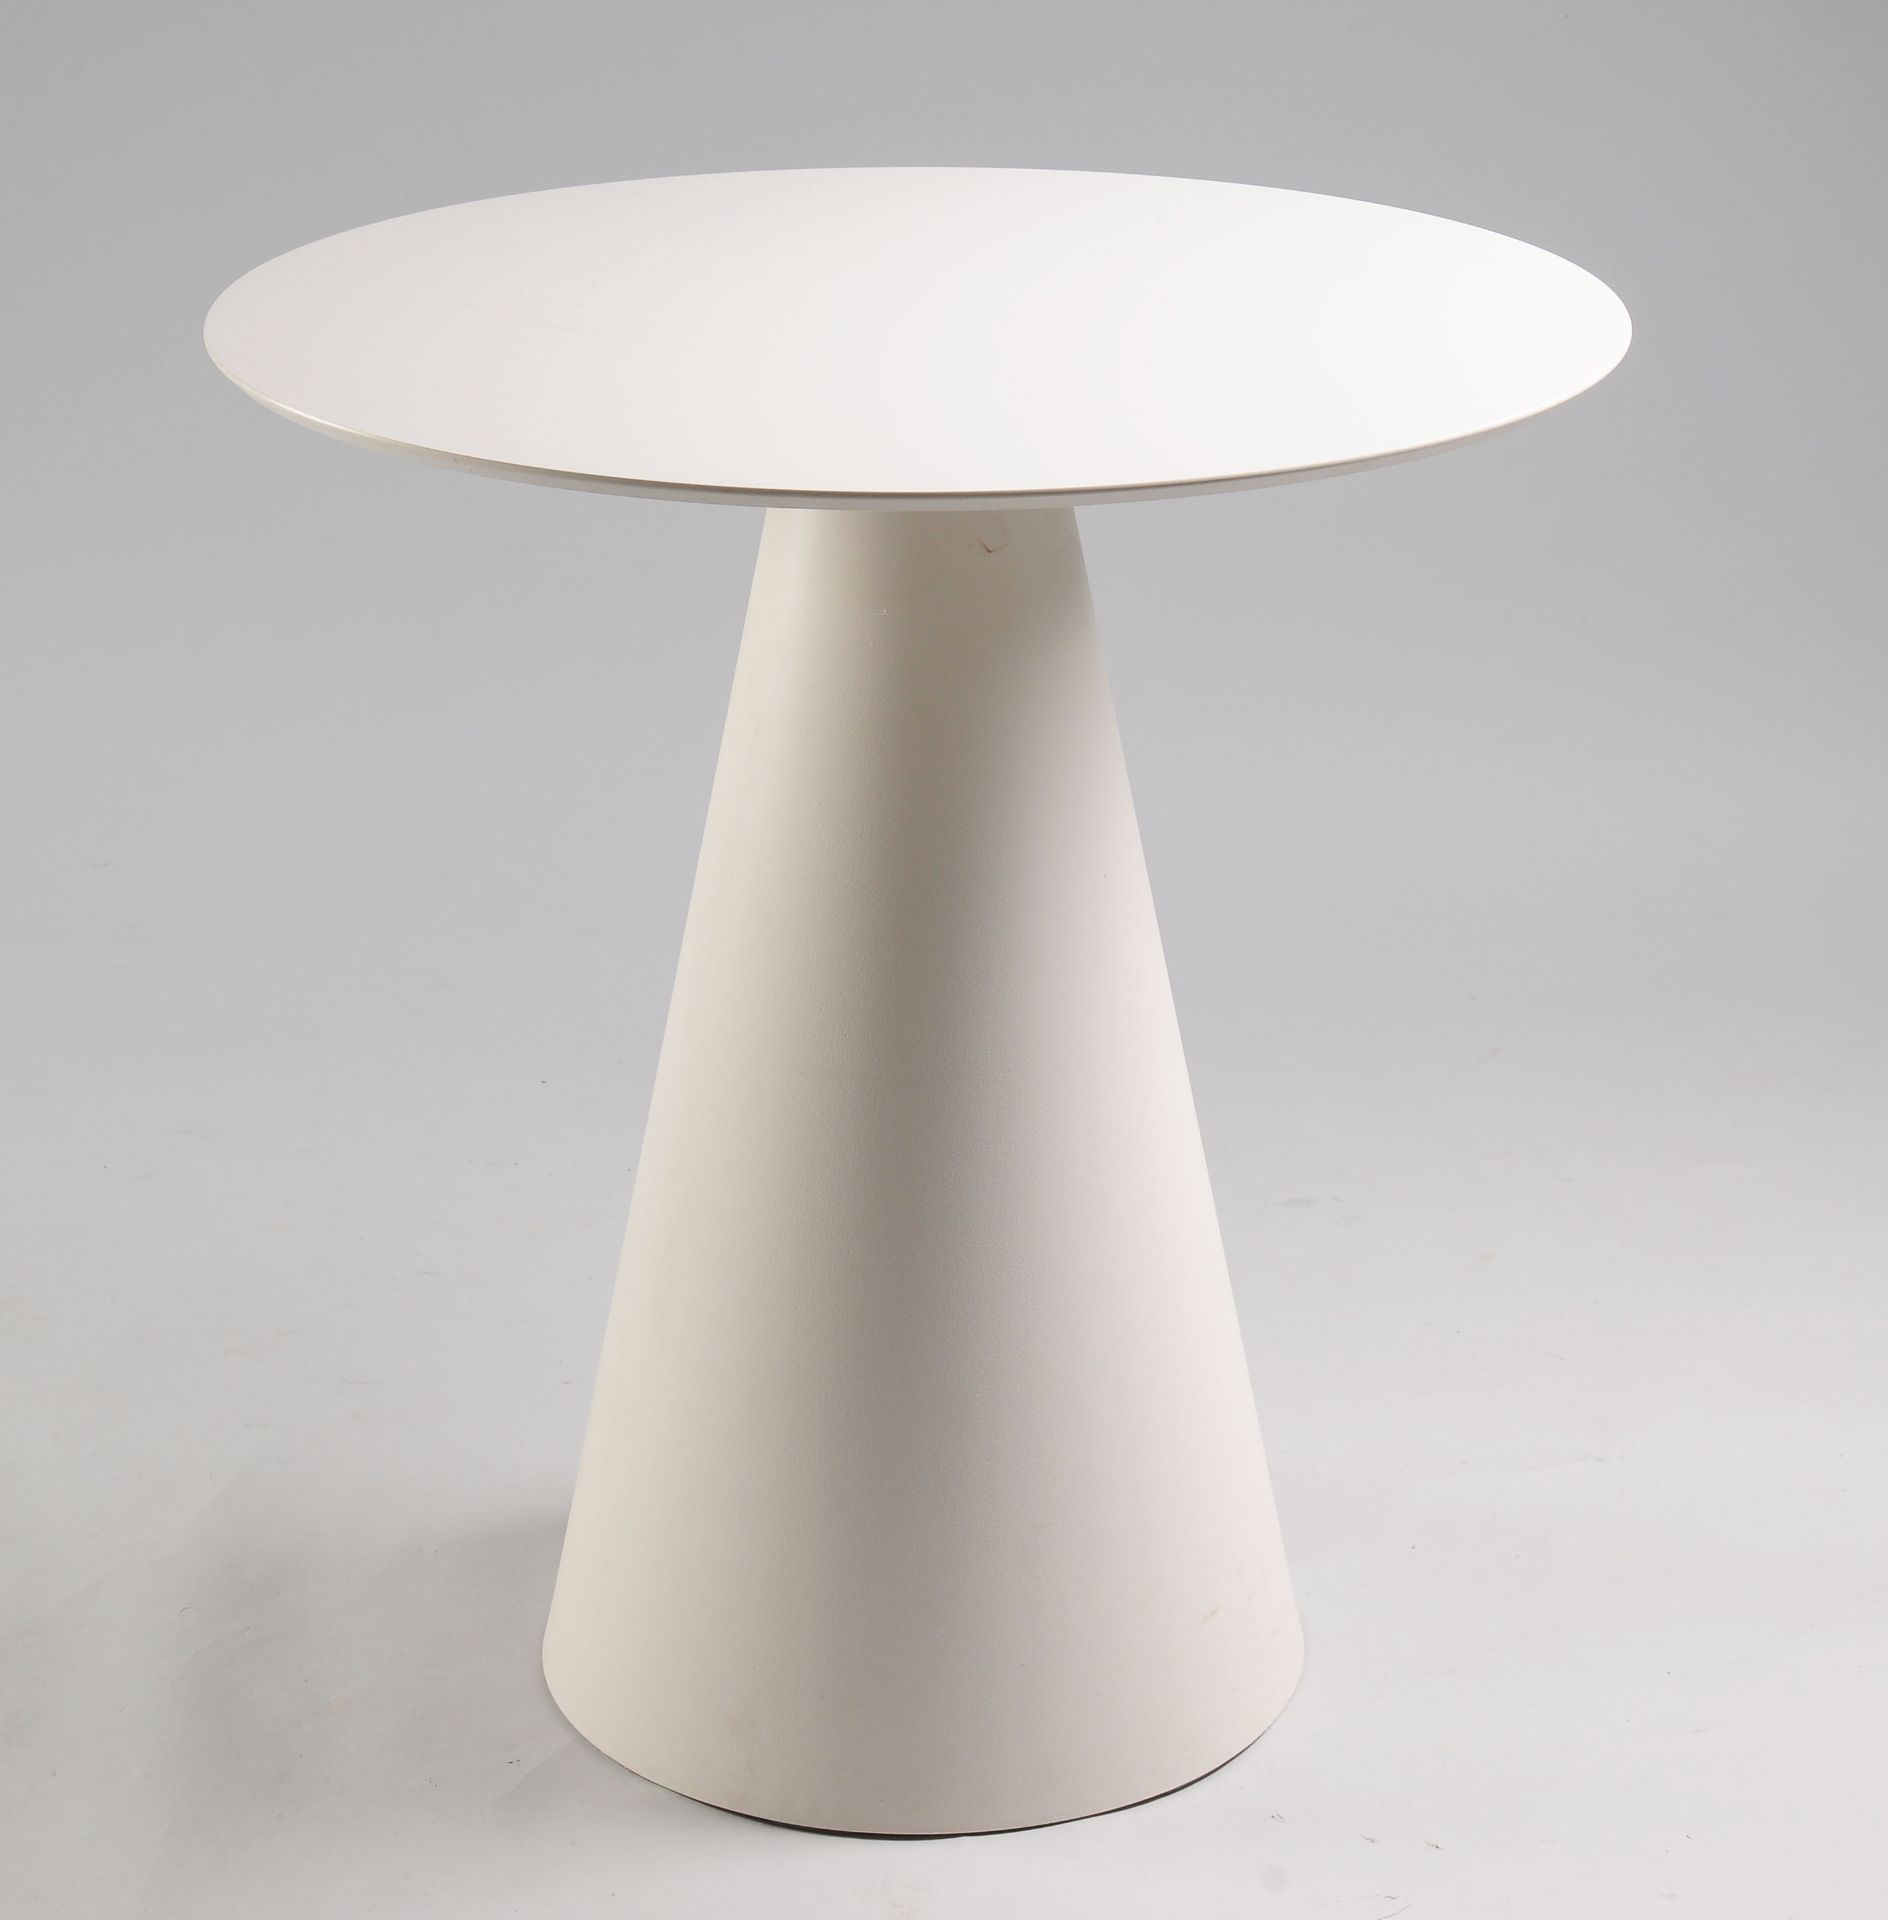 Design-TischWeißer Kunststoff. Über Fuß in Form eines Kegelstumpfes montierte runde Platte